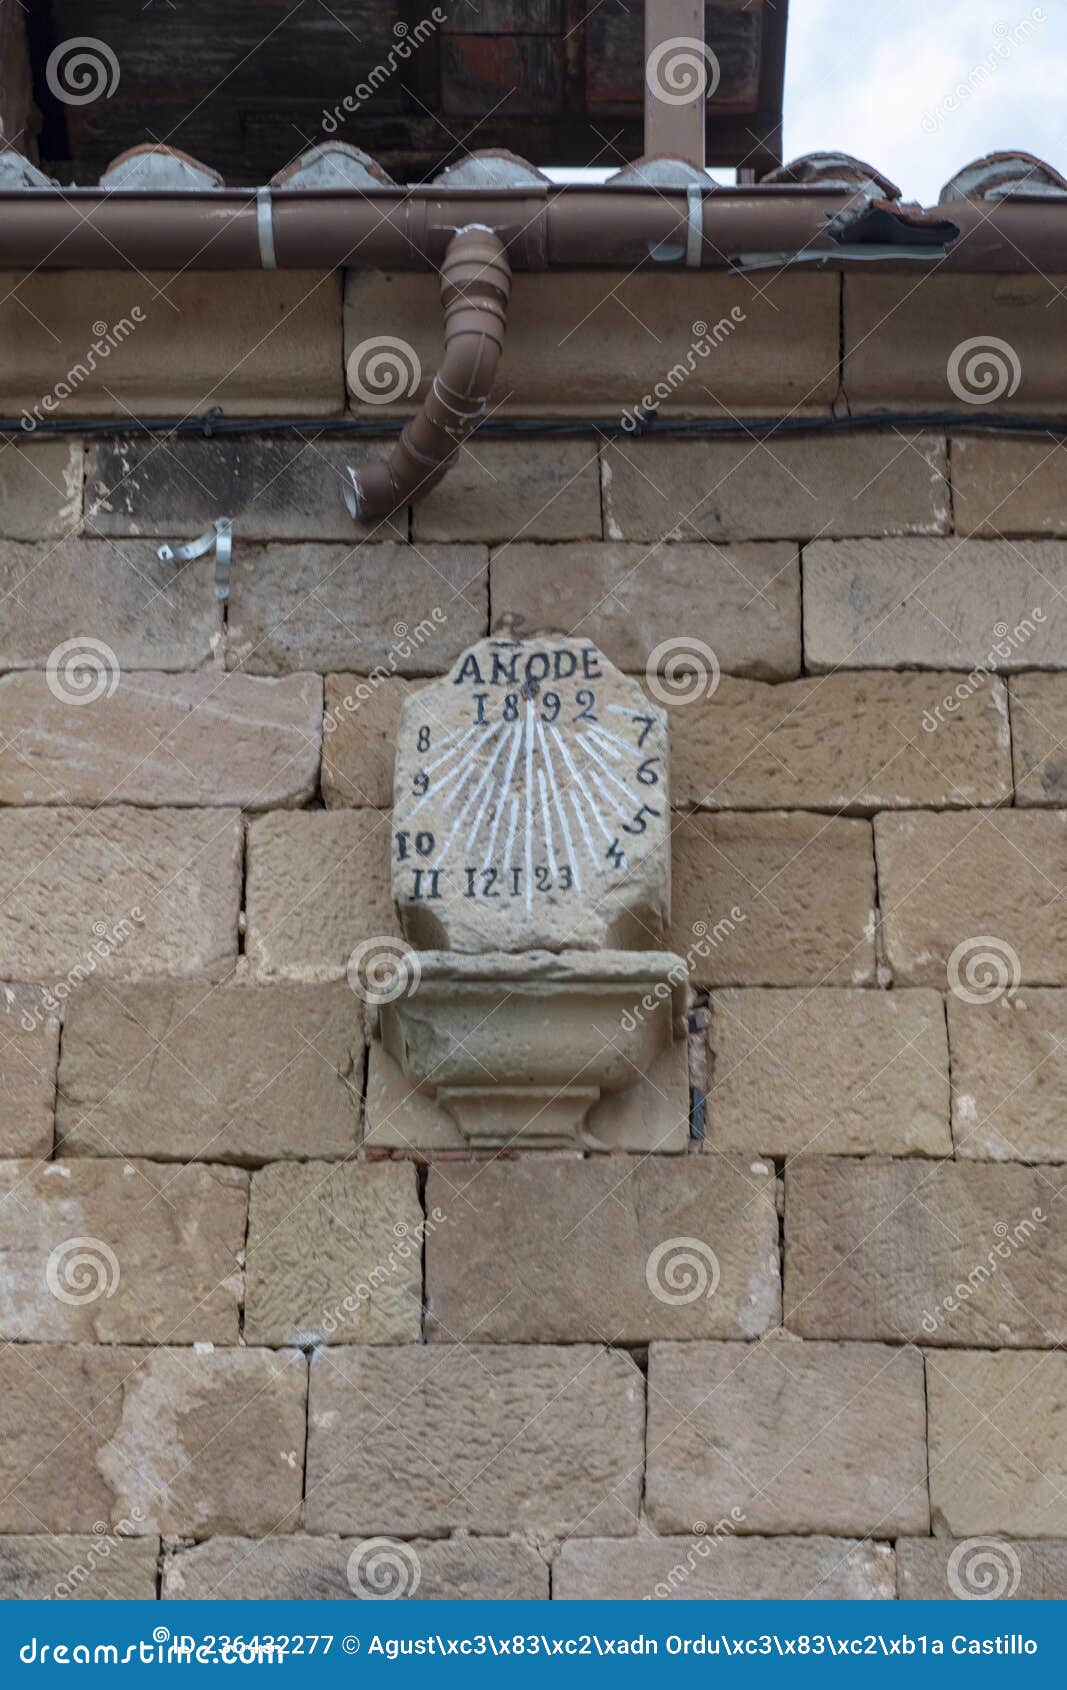 stone clock in the poblacion de abajo